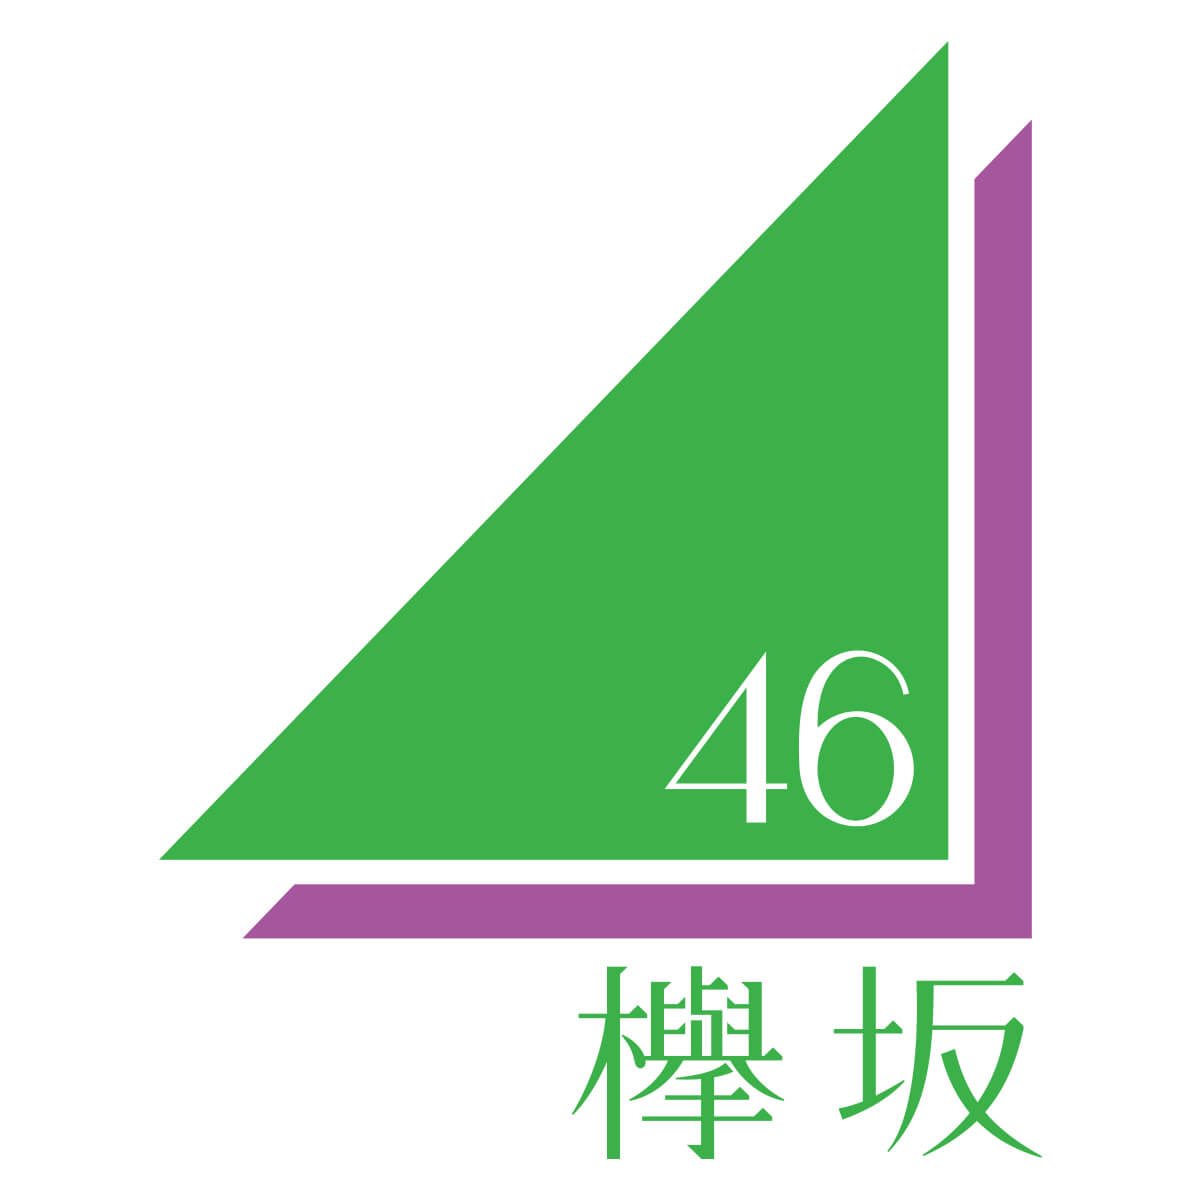 ゆっこ 基本箱推し Cdjのmcで初めて知ったんですけど 乃木坂46 欅坂46のロゴの三角形 下の角の角度が46 なんですってね しゃれおつぅ